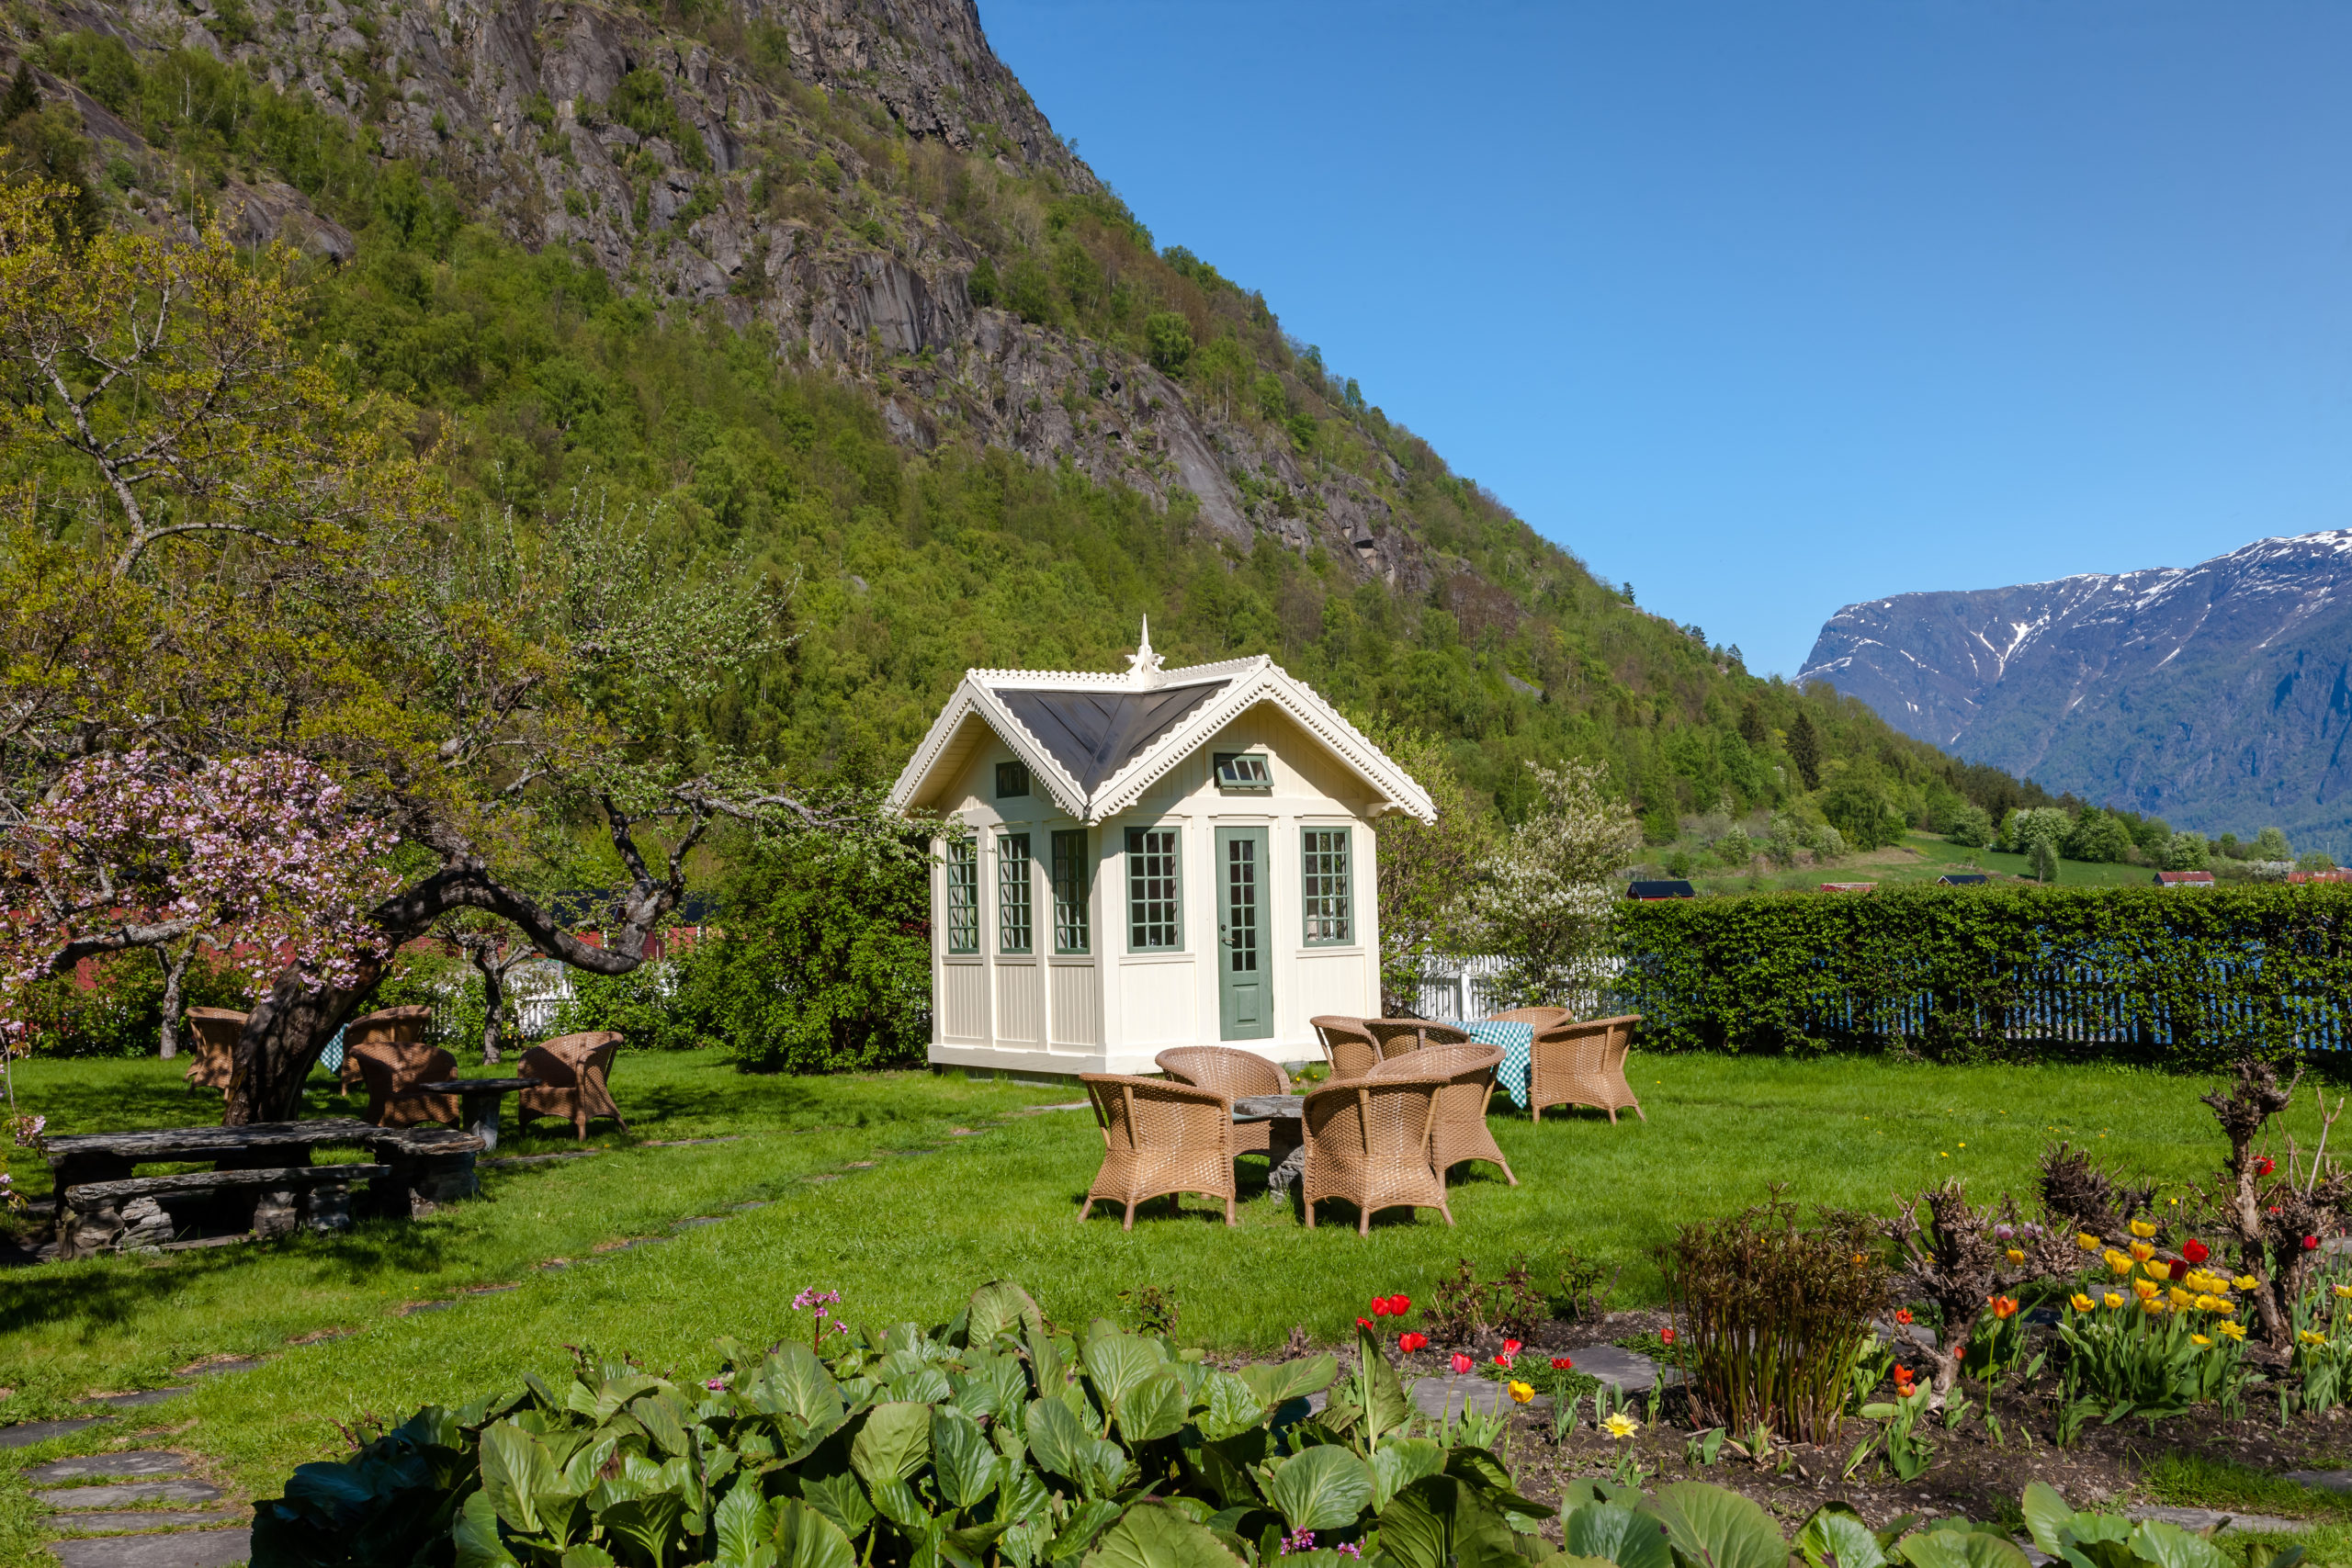 MInihus eller mikrohus i Norge - hvor kan man plassere minihus og er det søknadspliktig